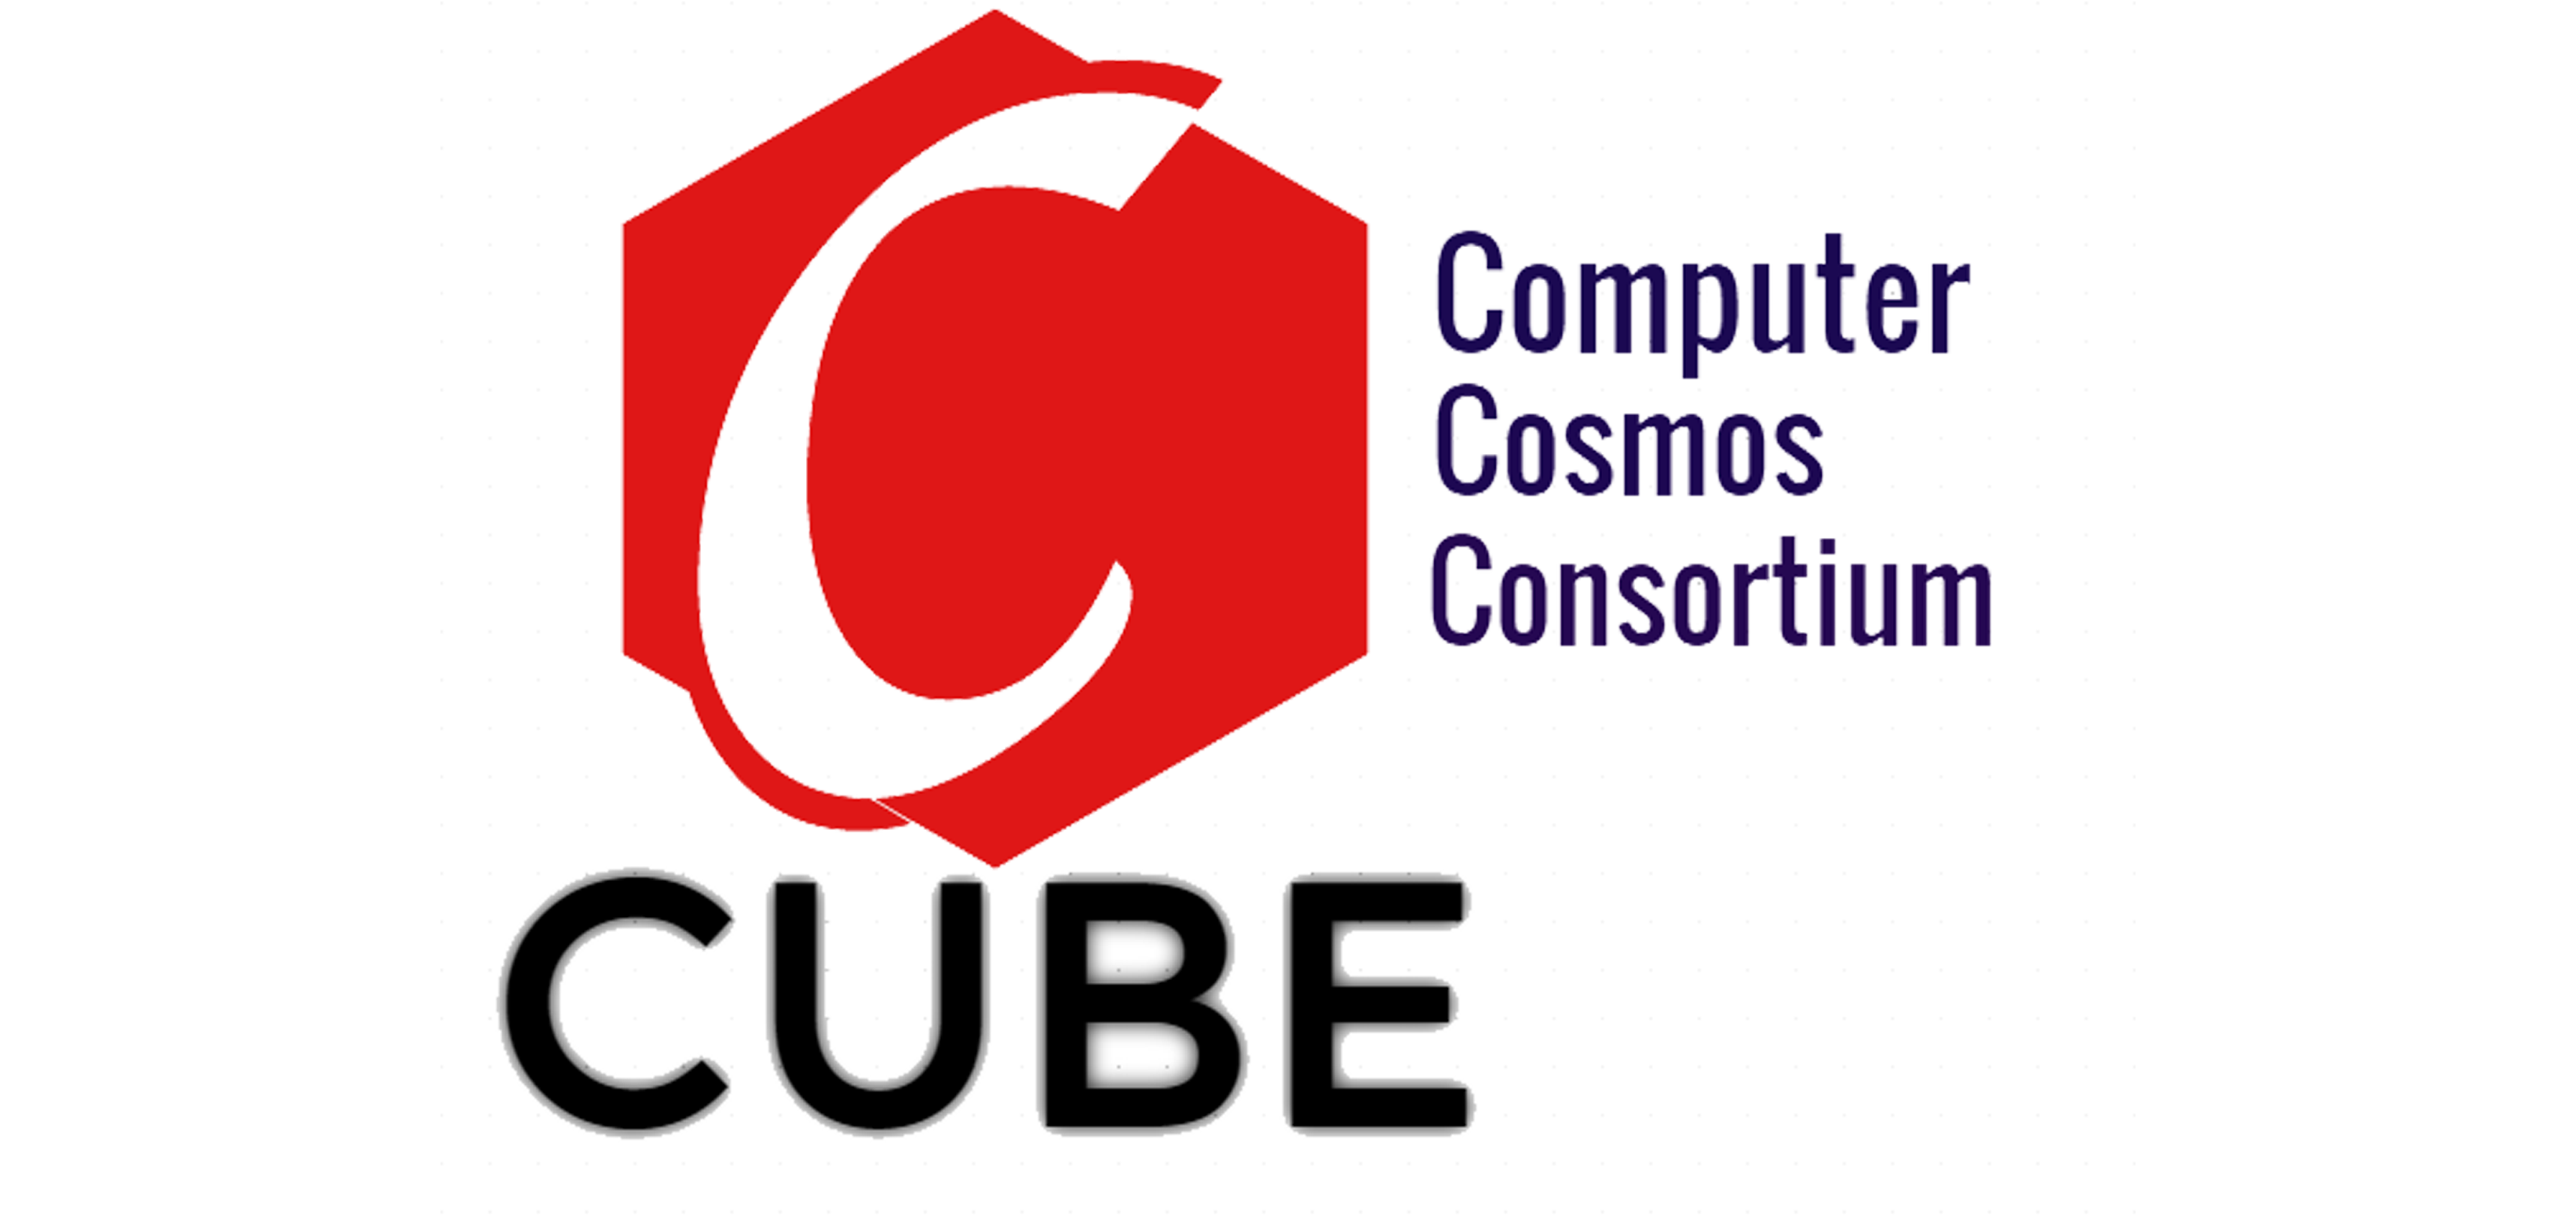 C Cube PCCOER